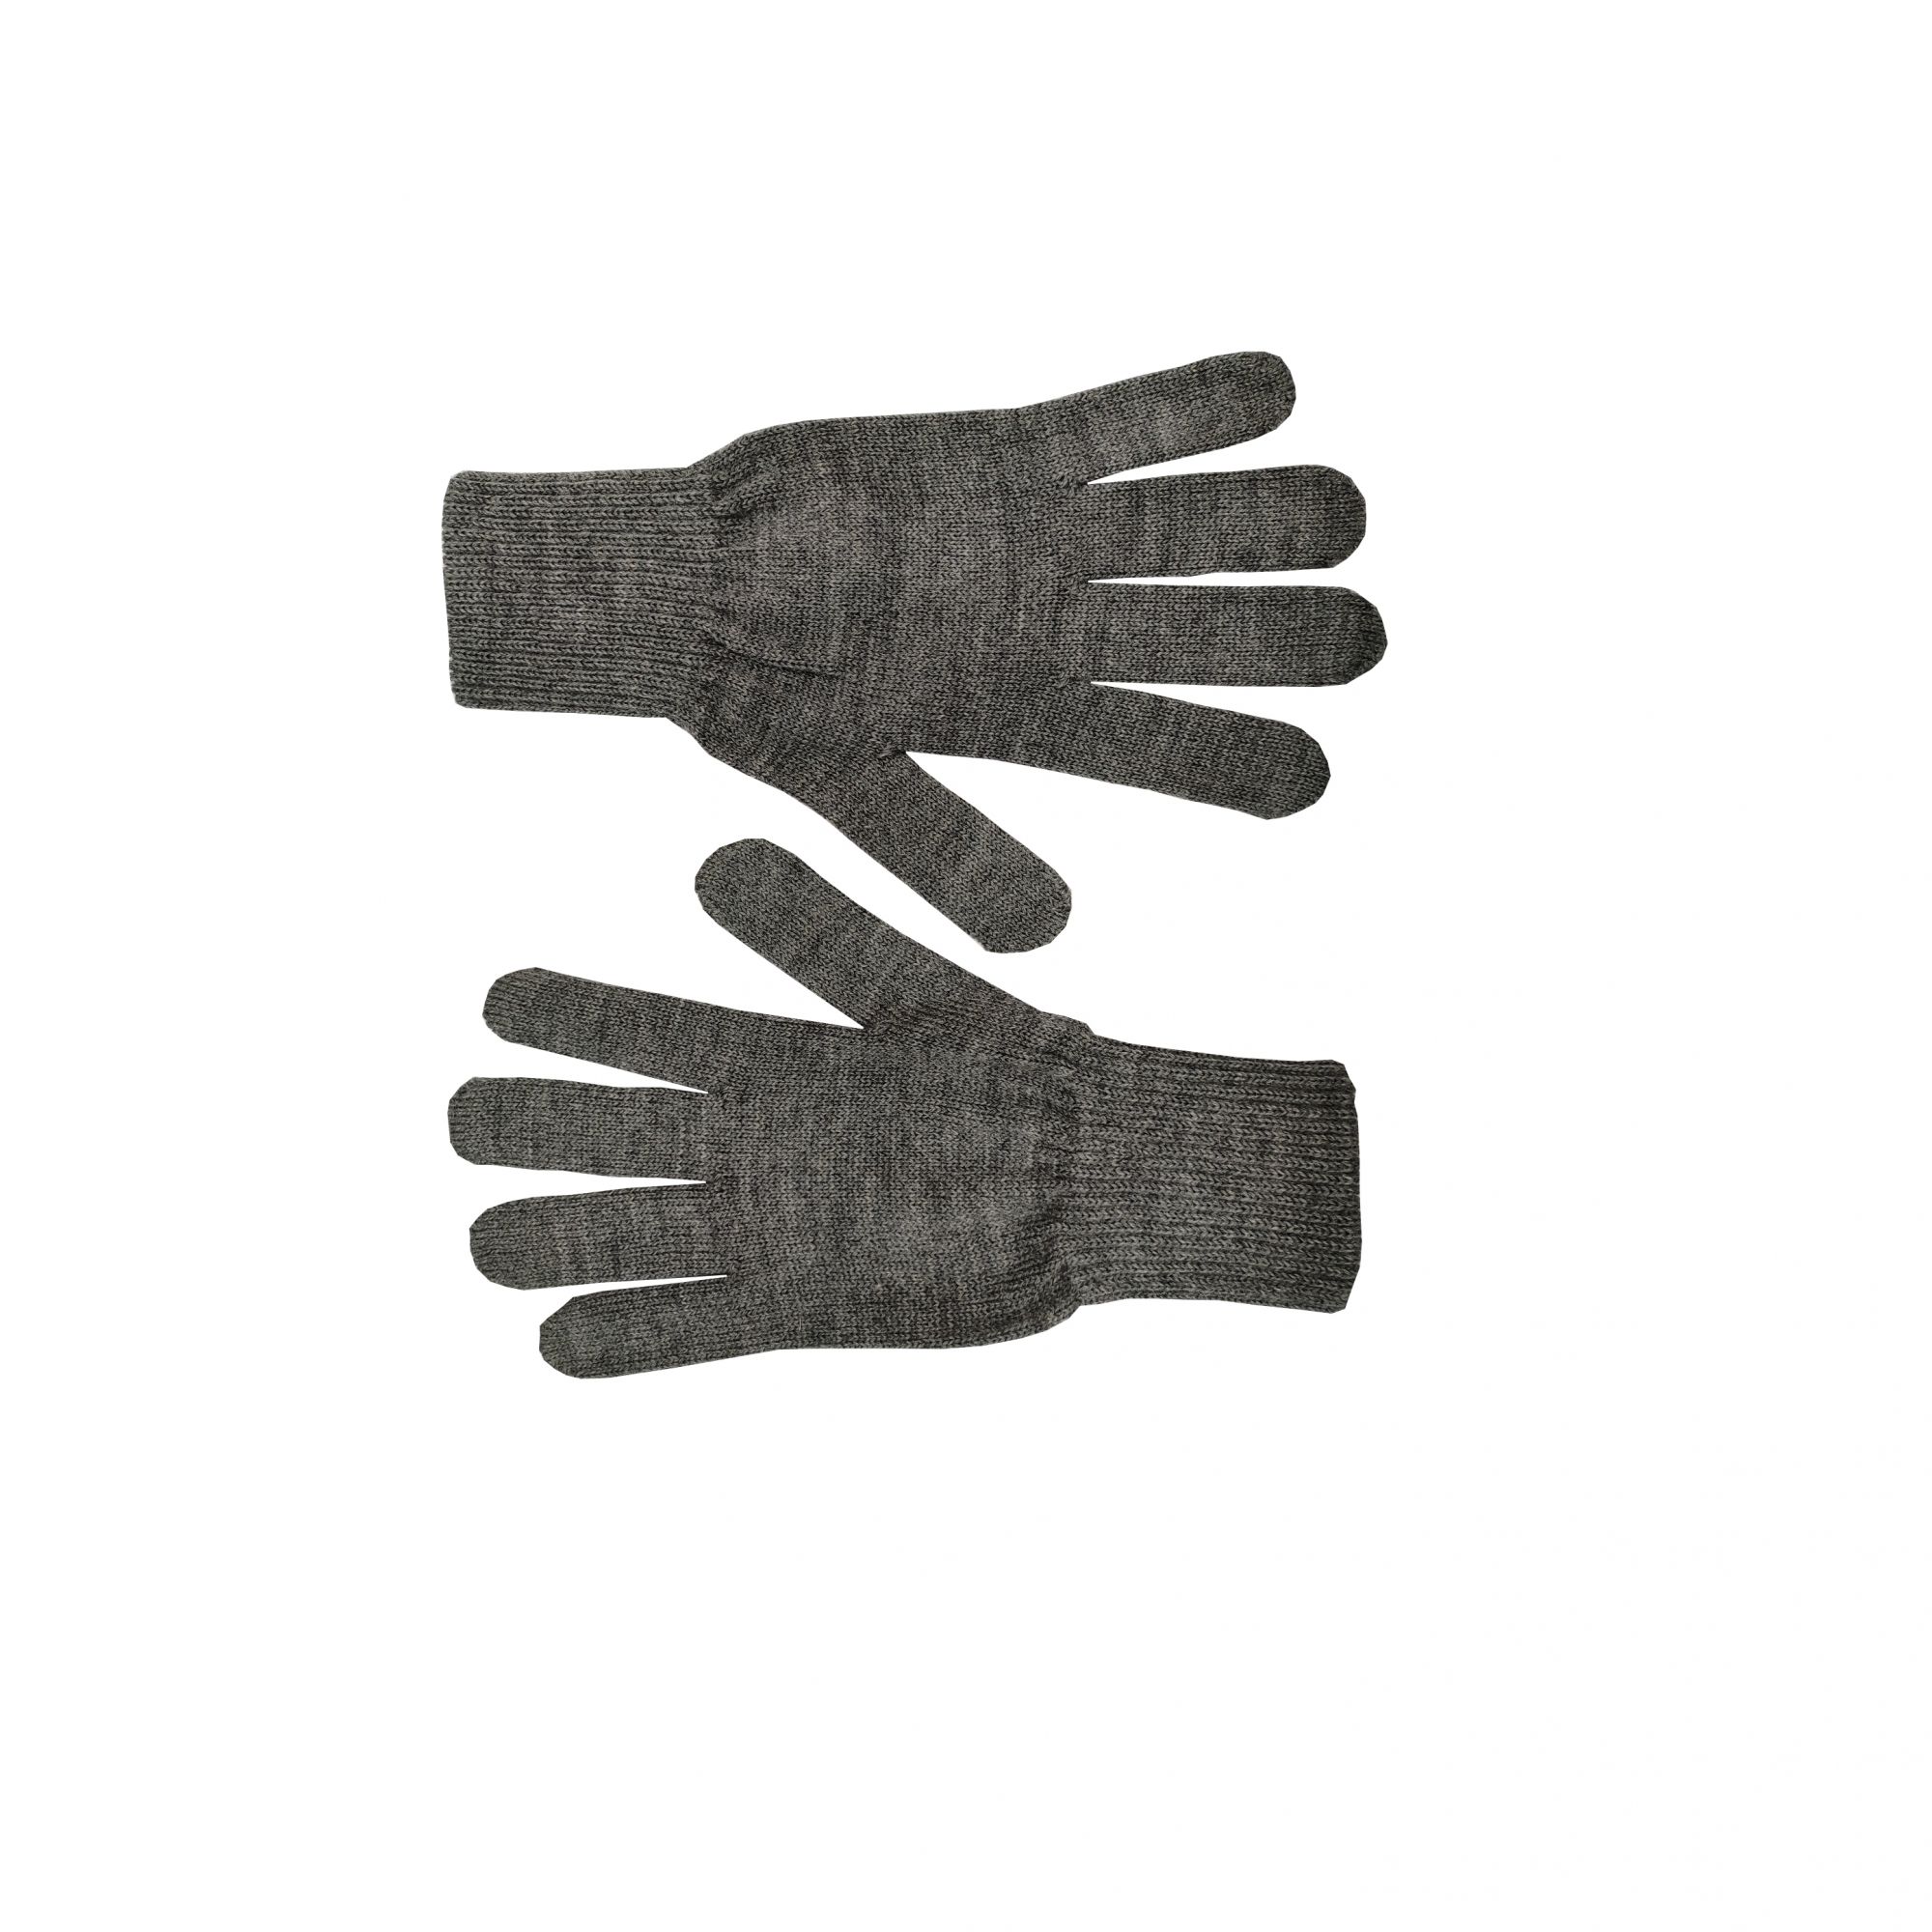 Purewool Gloves